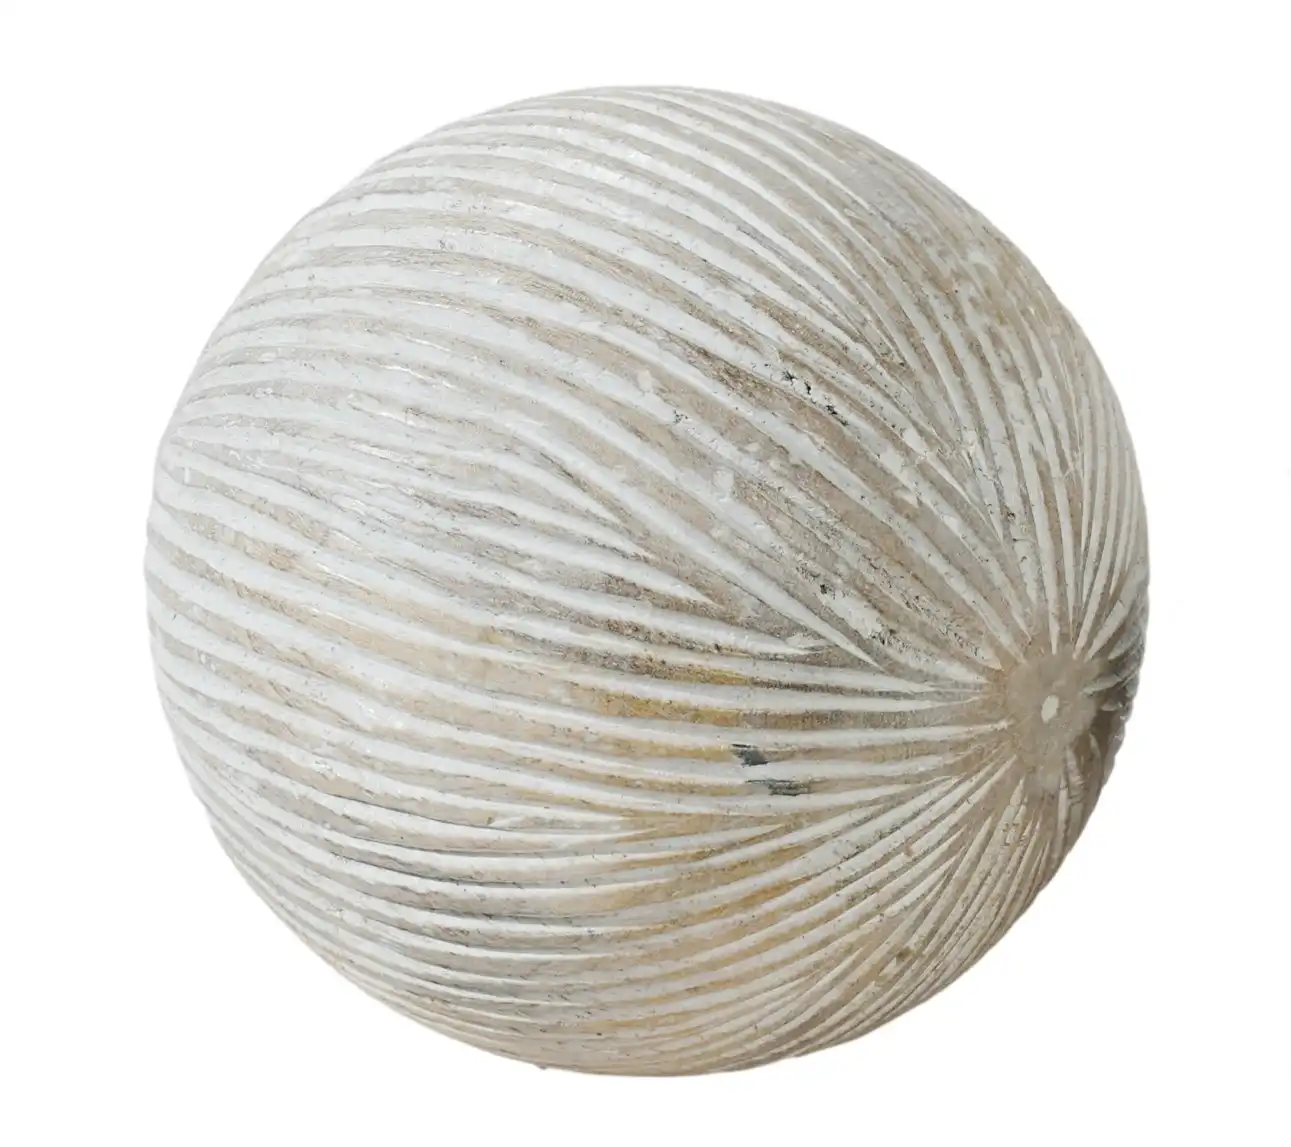 10cm Cyrus Decor Wooden Sphere